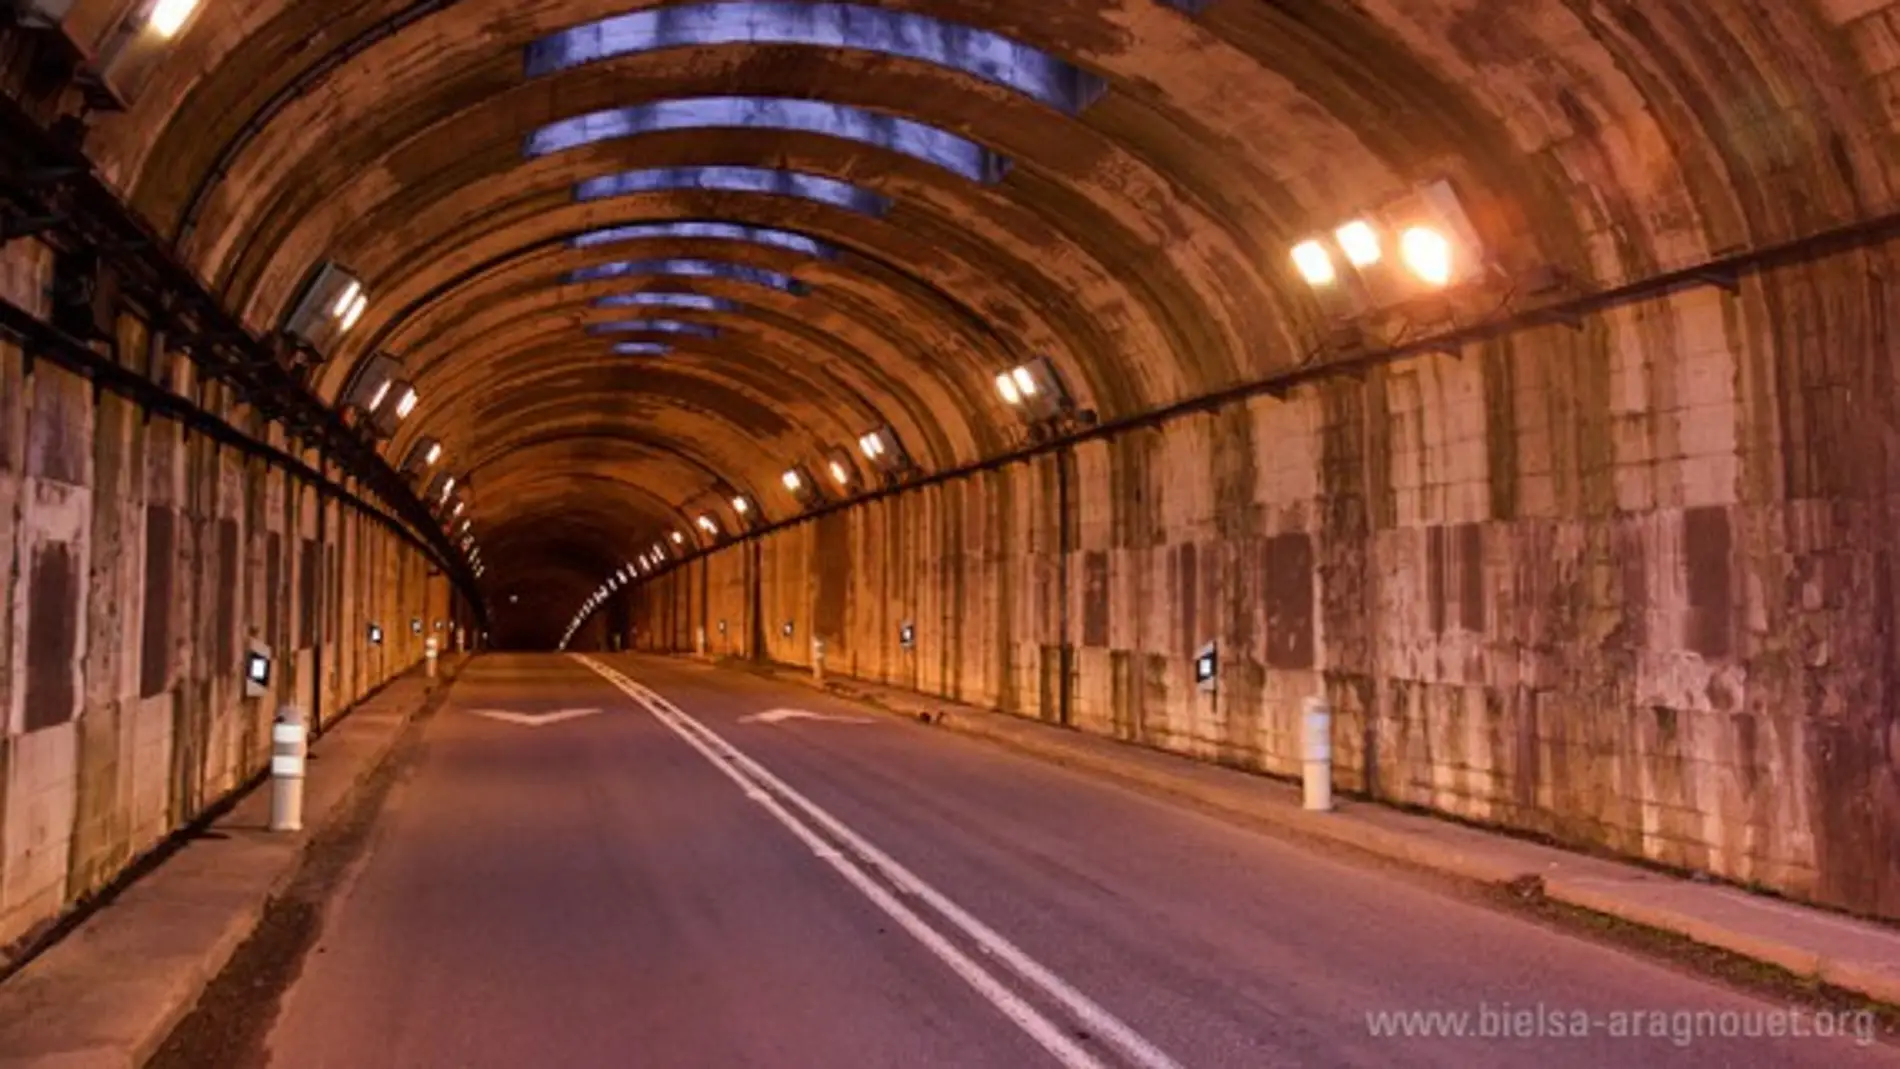 El túnel de Bielsa seguirá cerrado por las noches, al menos, hasta marzo